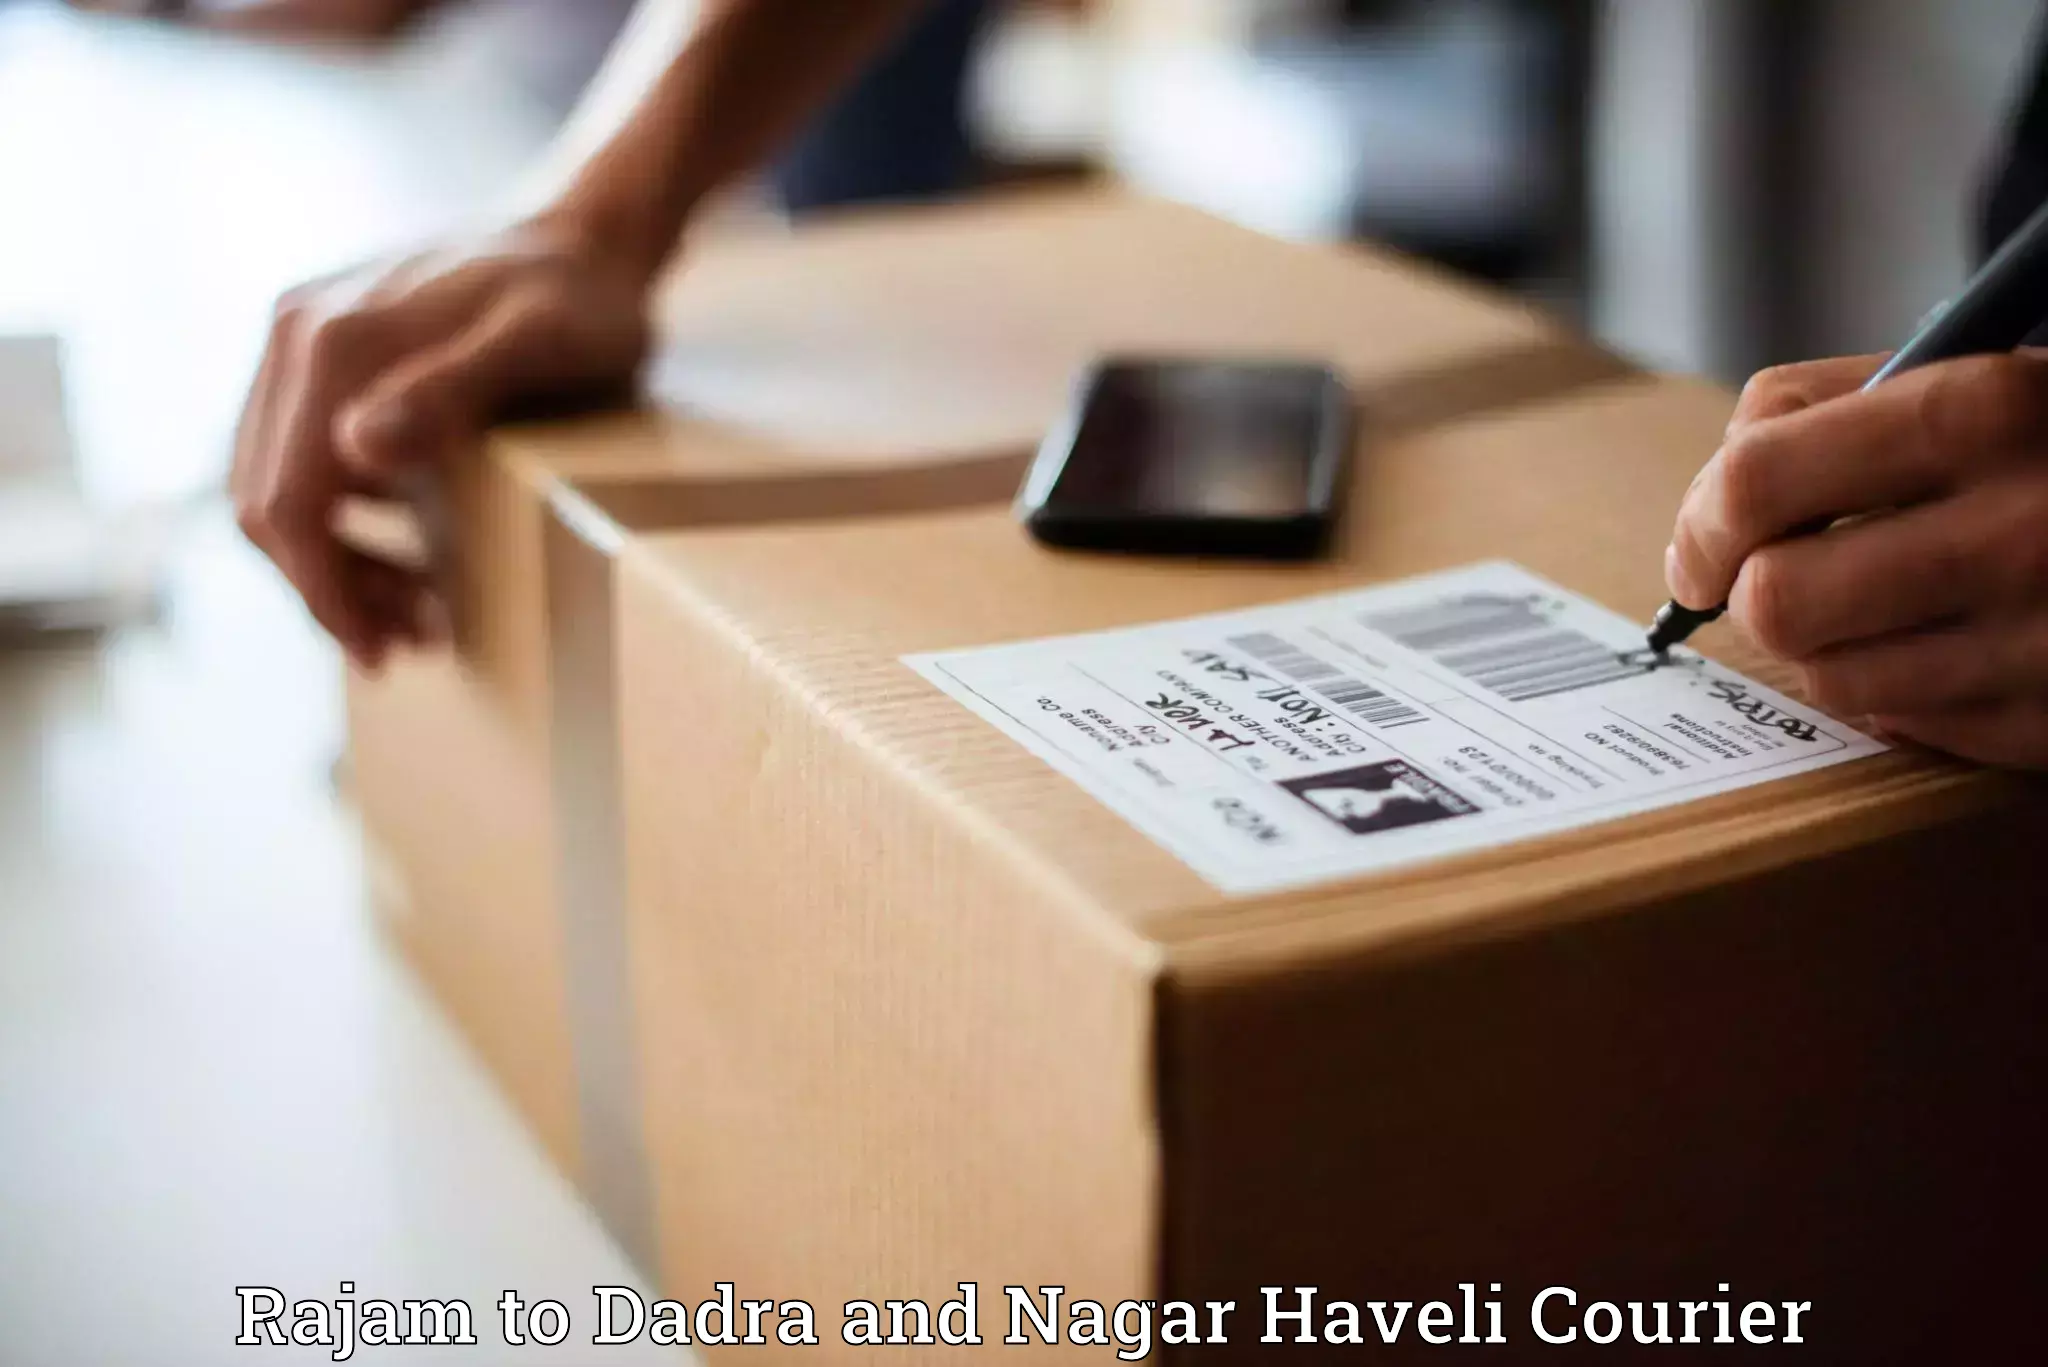 Logistics service provider Rajam to Dadra and Nagar Haveli